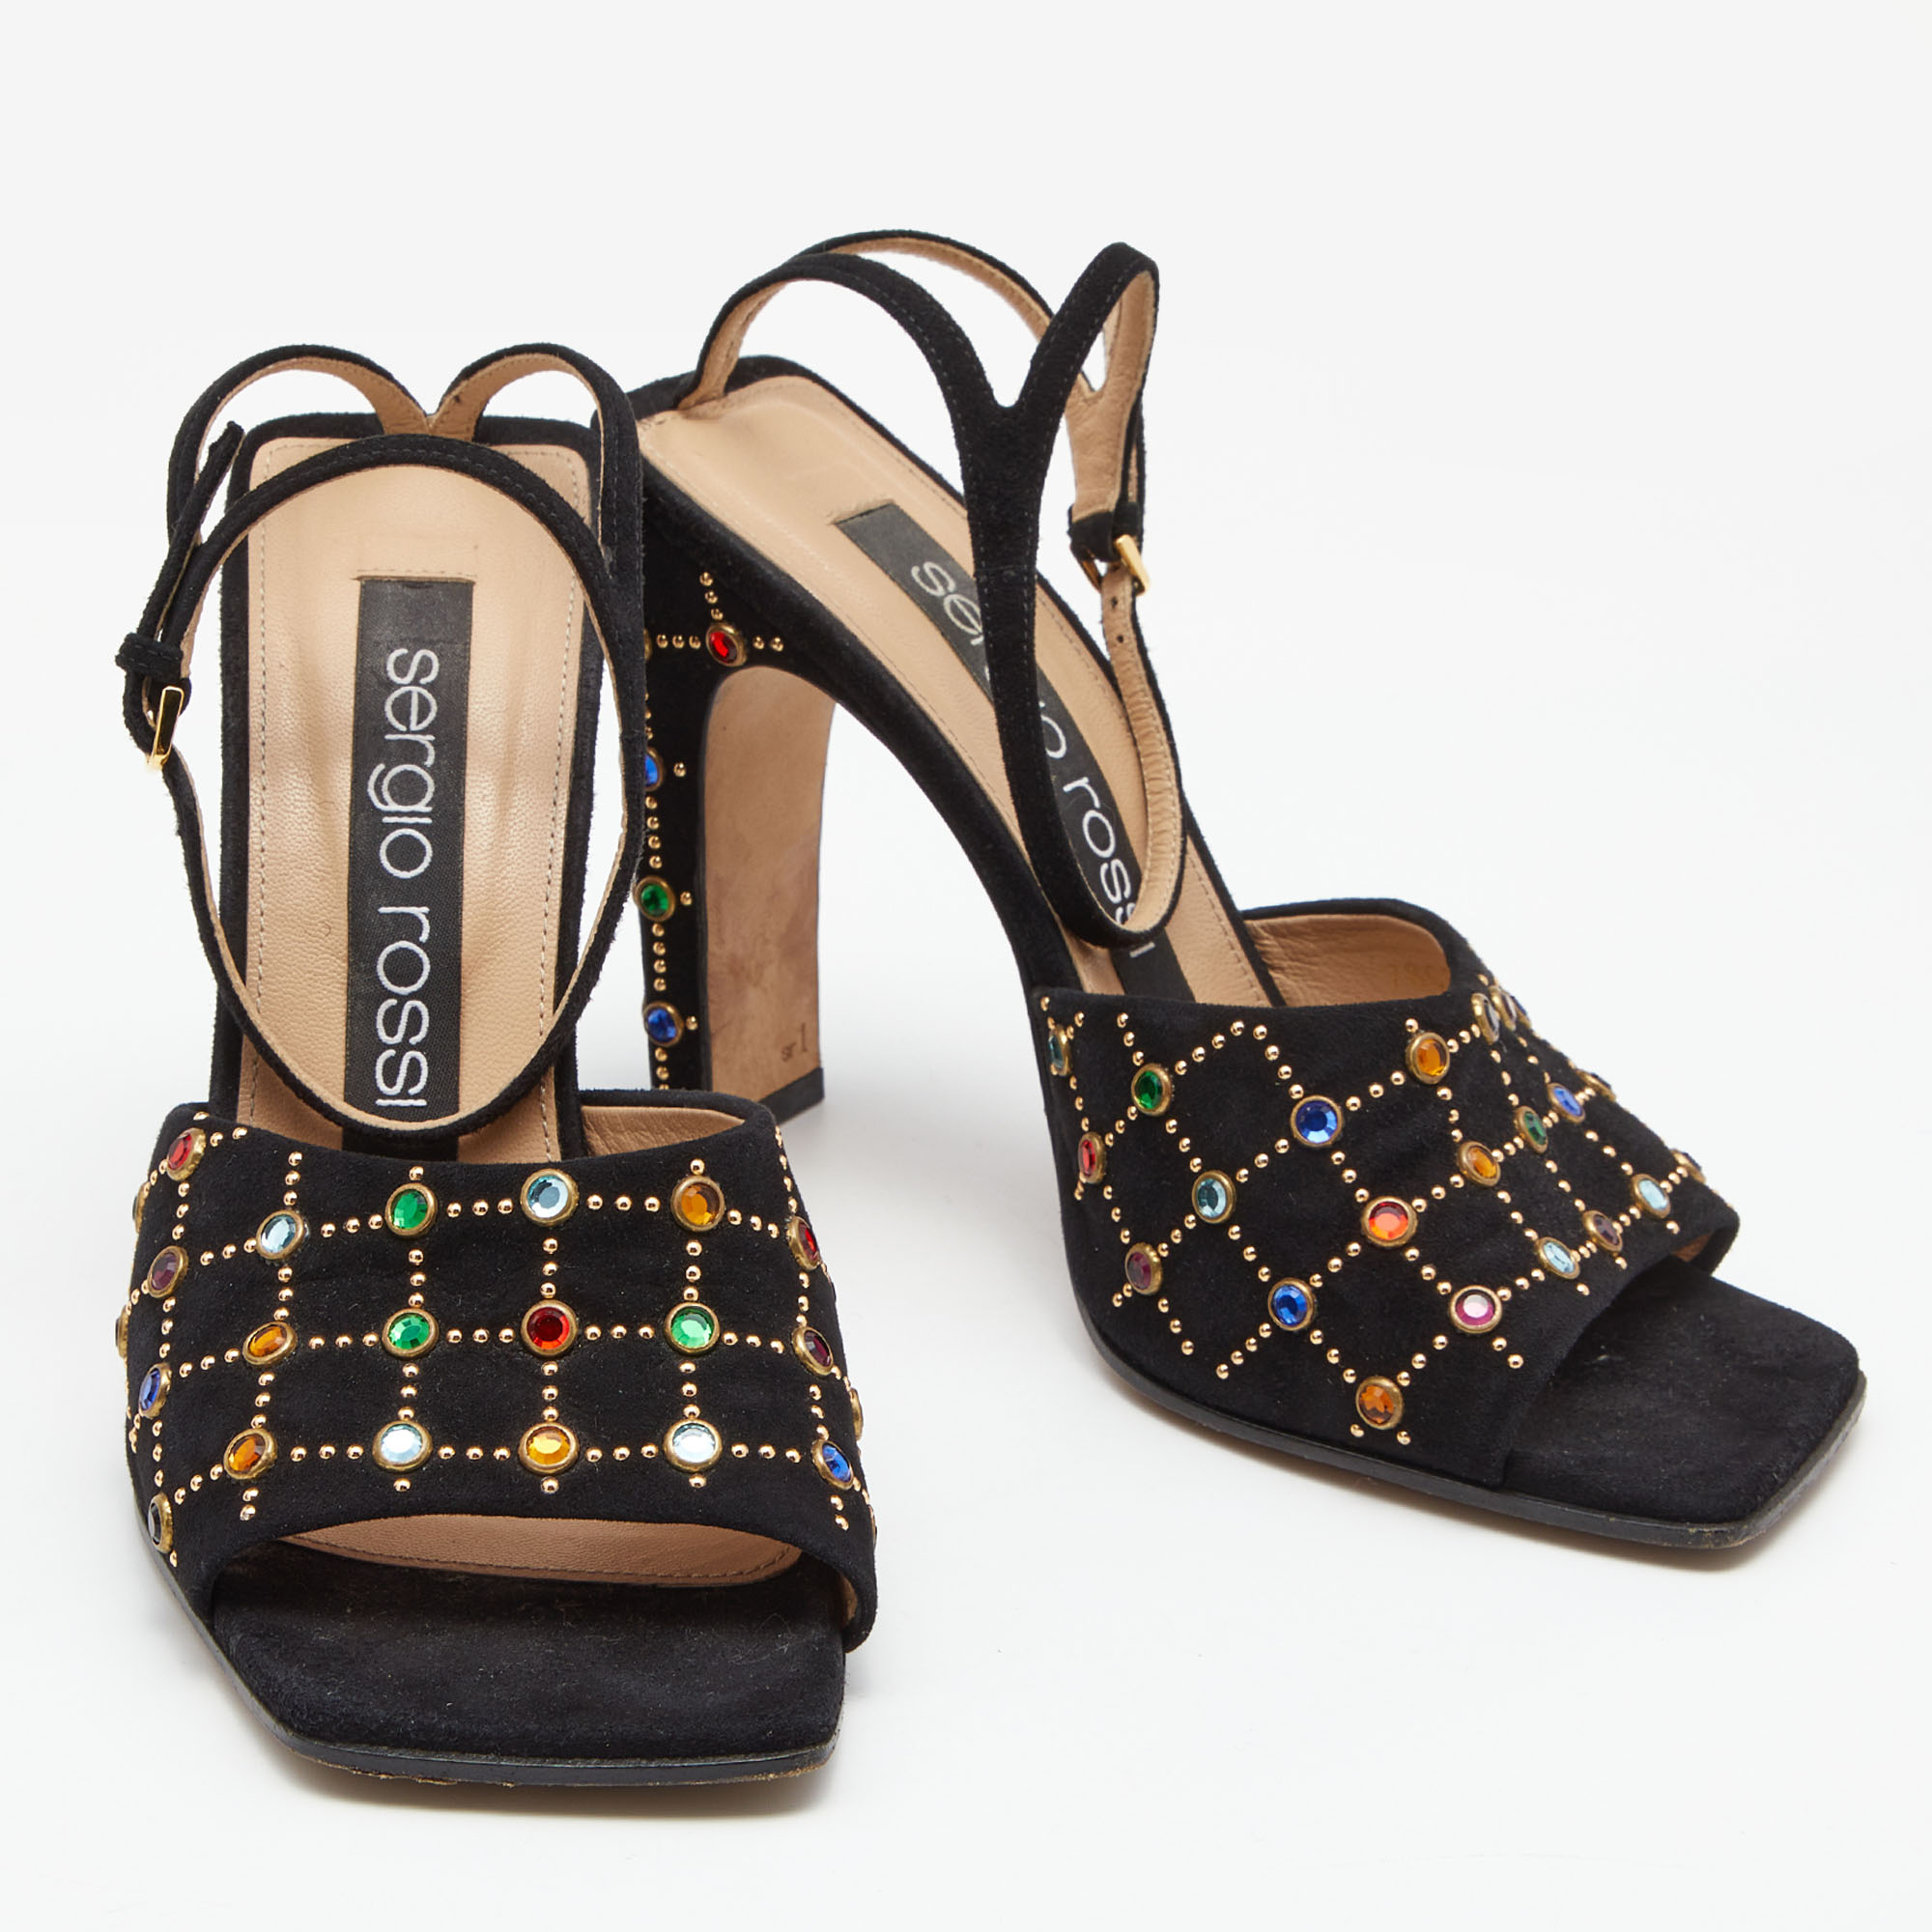 Sergio Rossi Black Suede Crystal Embellished Ankle Strap Sandals Size 37.5